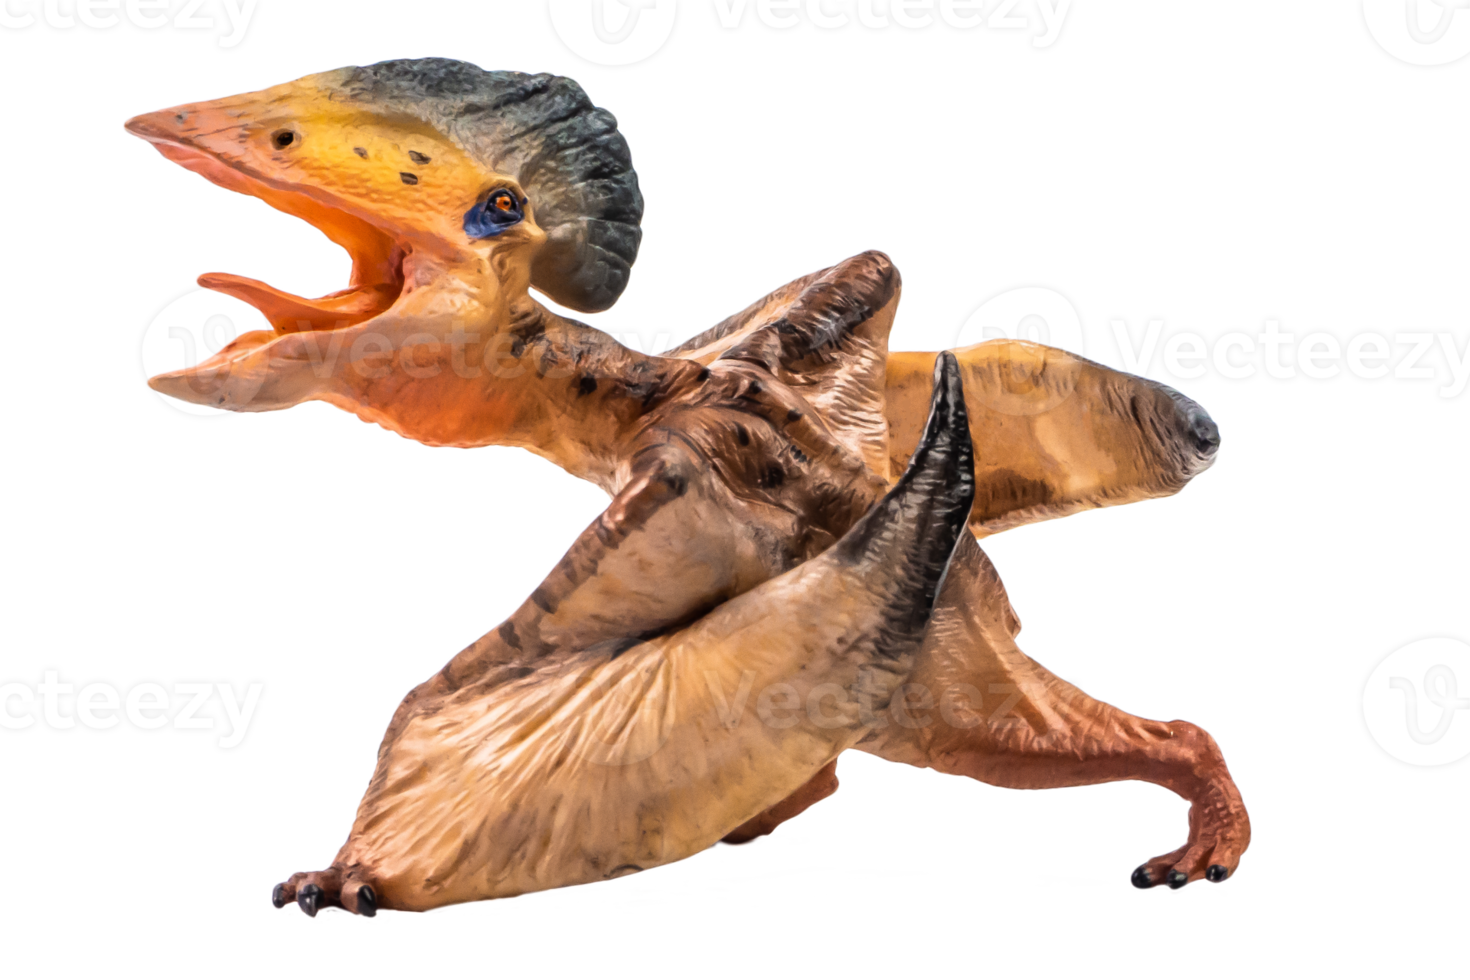 tupuxuara pterodattilo dinosauro su sfondo bianco png